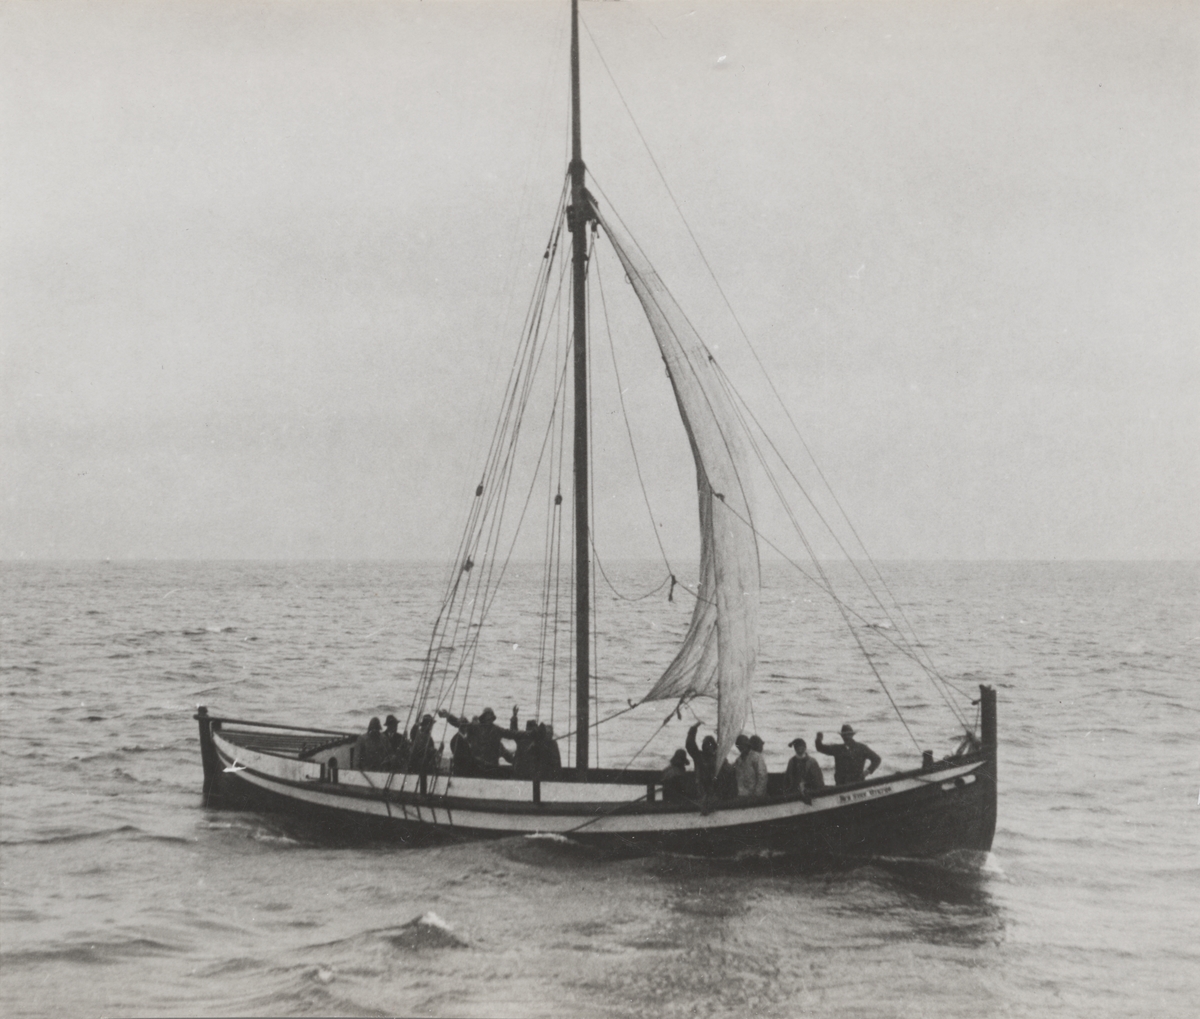 Storbåt "Den siste viking" ved Trondhjem 1930.